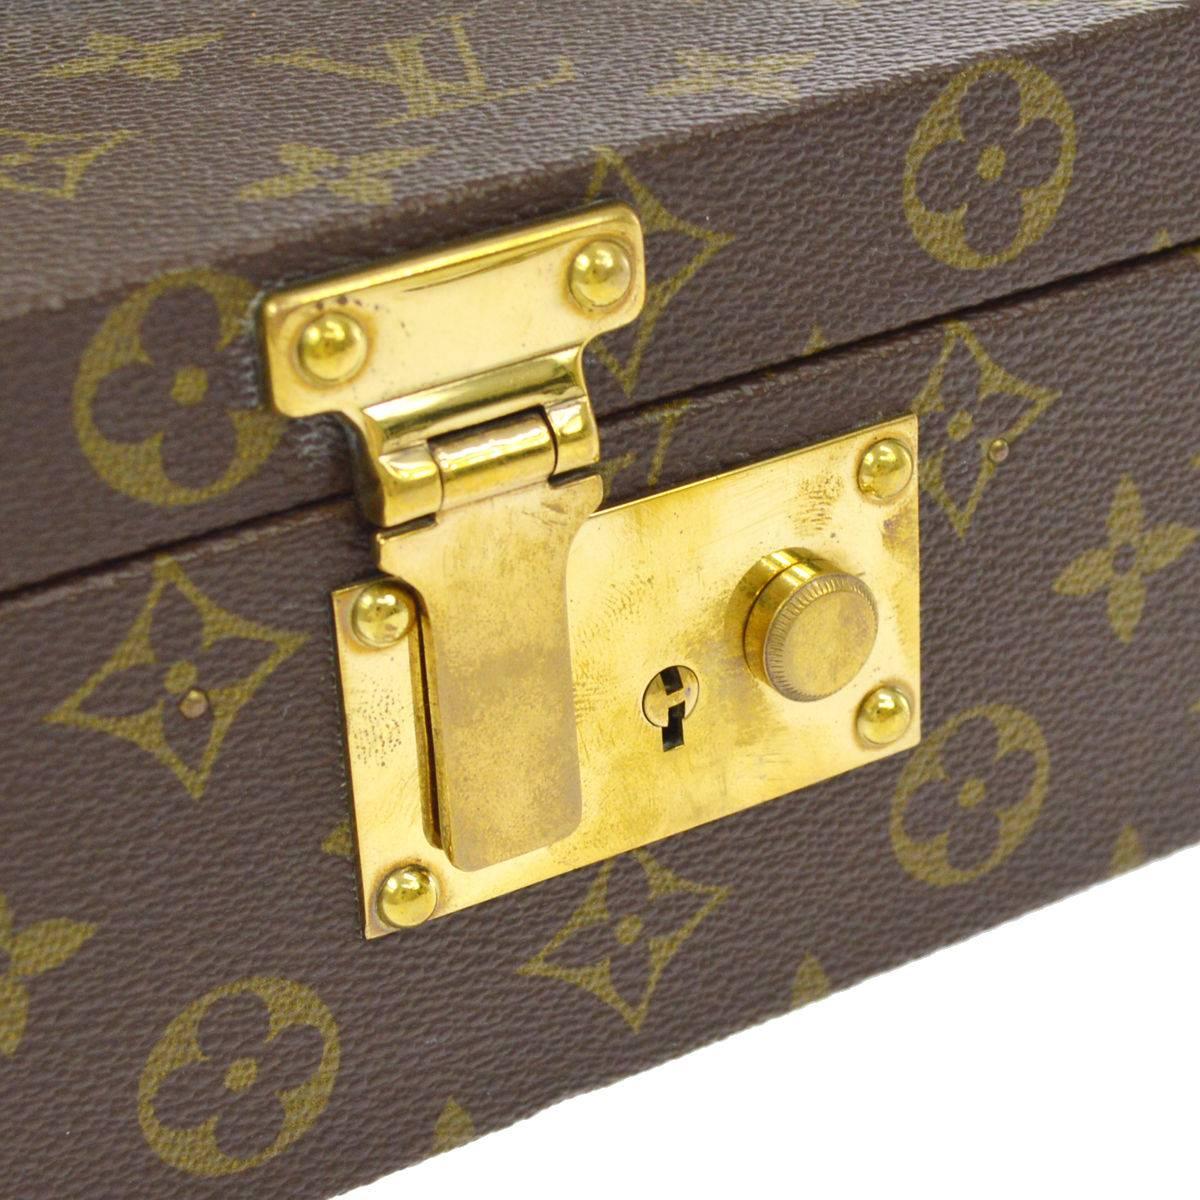 Louis Vuitton Monogram Canvas Men's Women's Jewelry Evening Travel Top Handle Storage Bag Case With Keys 

Monogram canvas
Leather
Leather lining
Handle drop 2"
Measures 8.75" W x 3.5" H x 5.5" D  
Includes original Louis Vuitton